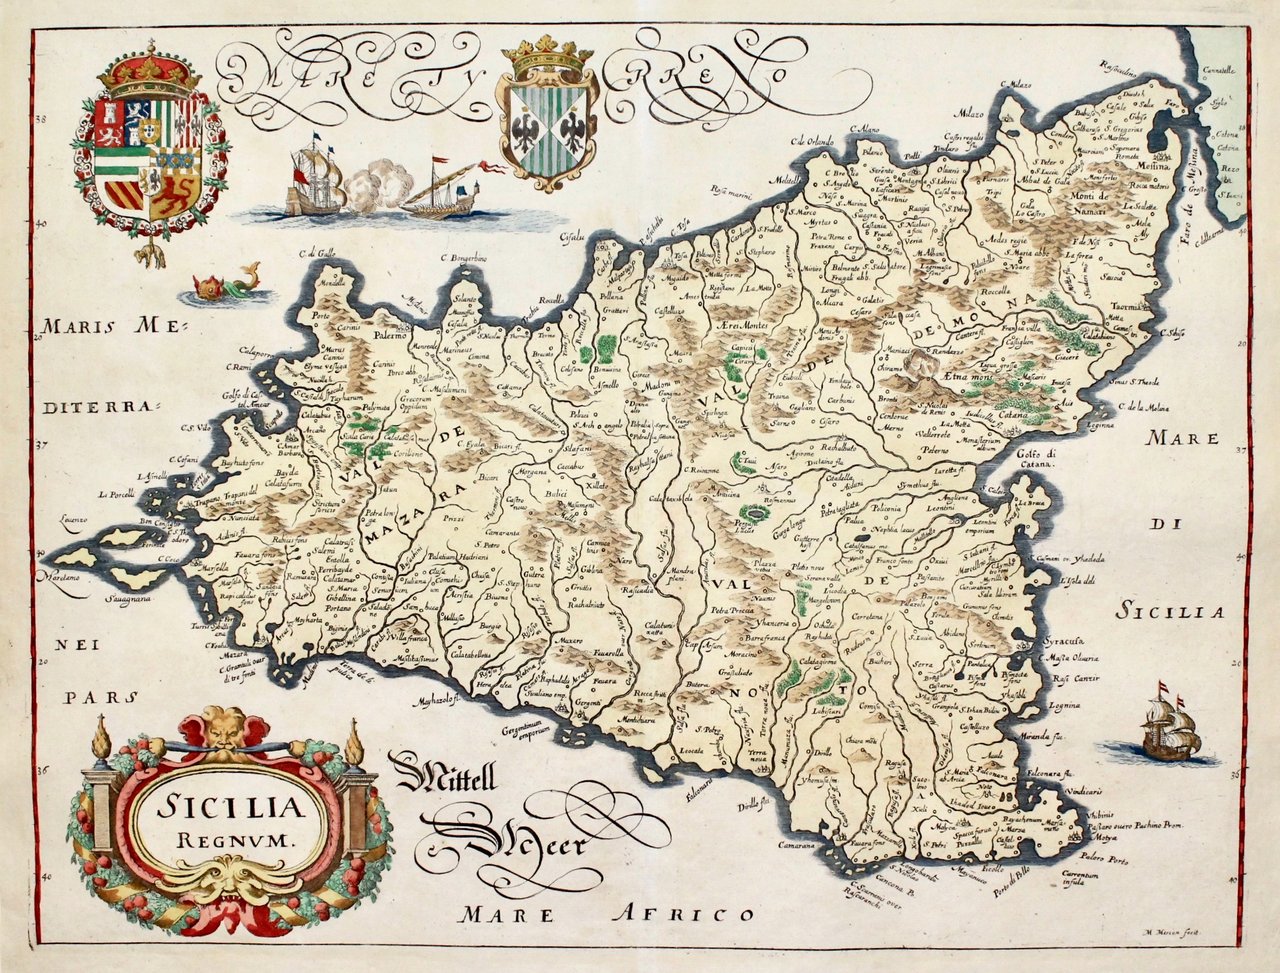 Sicilia regnum